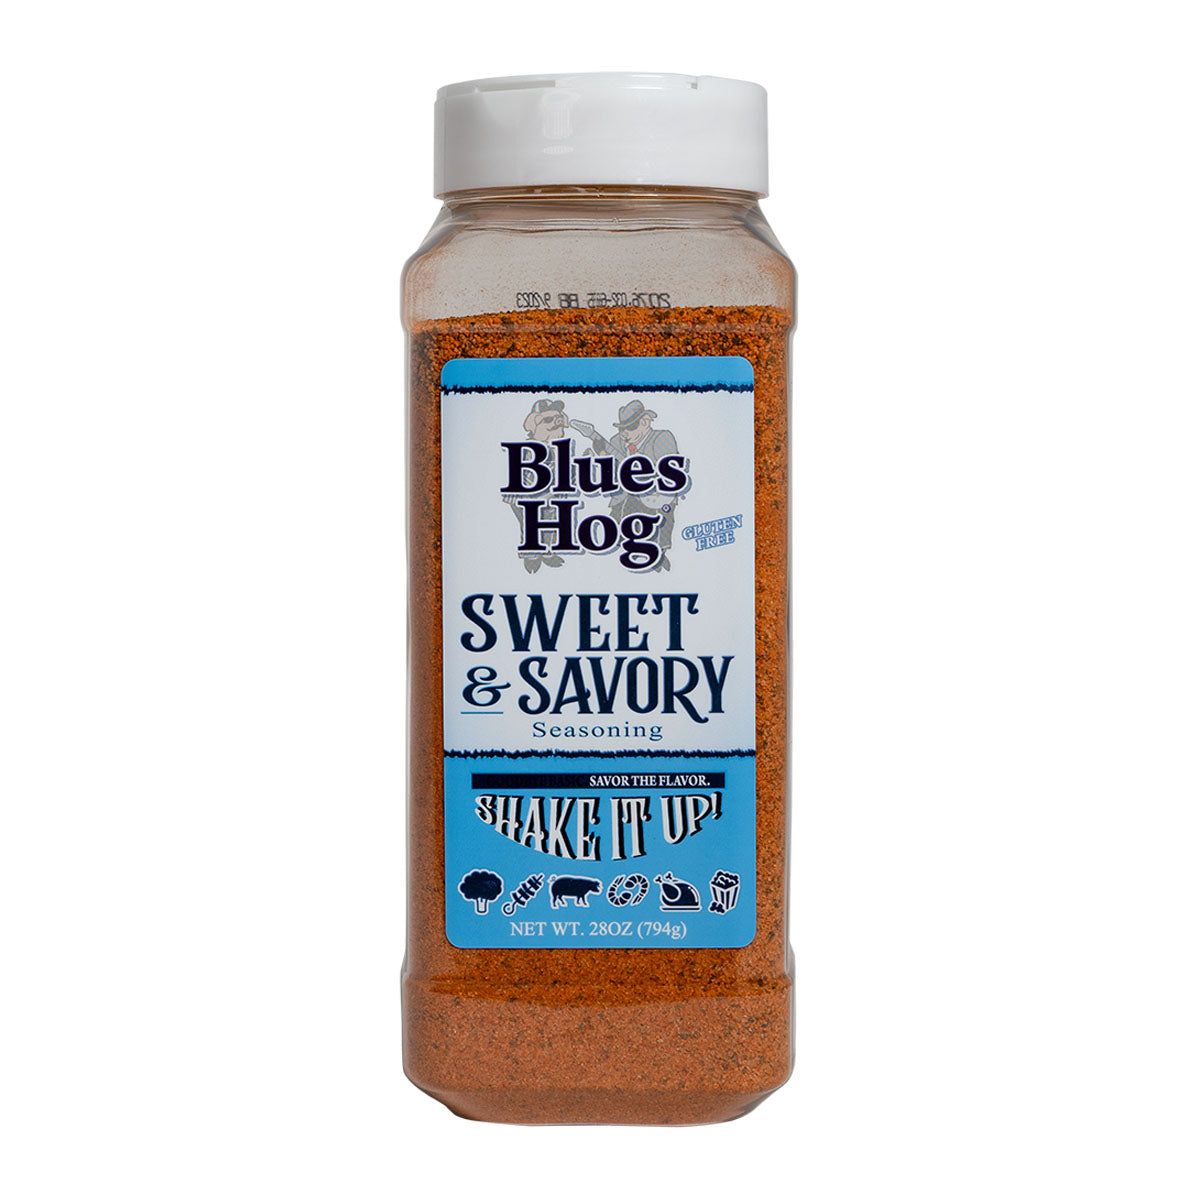 
                  
                    Sweet & Savory Seasoning "2 lb. Shaker" (26 oz.) - Blues Hog
                  
                